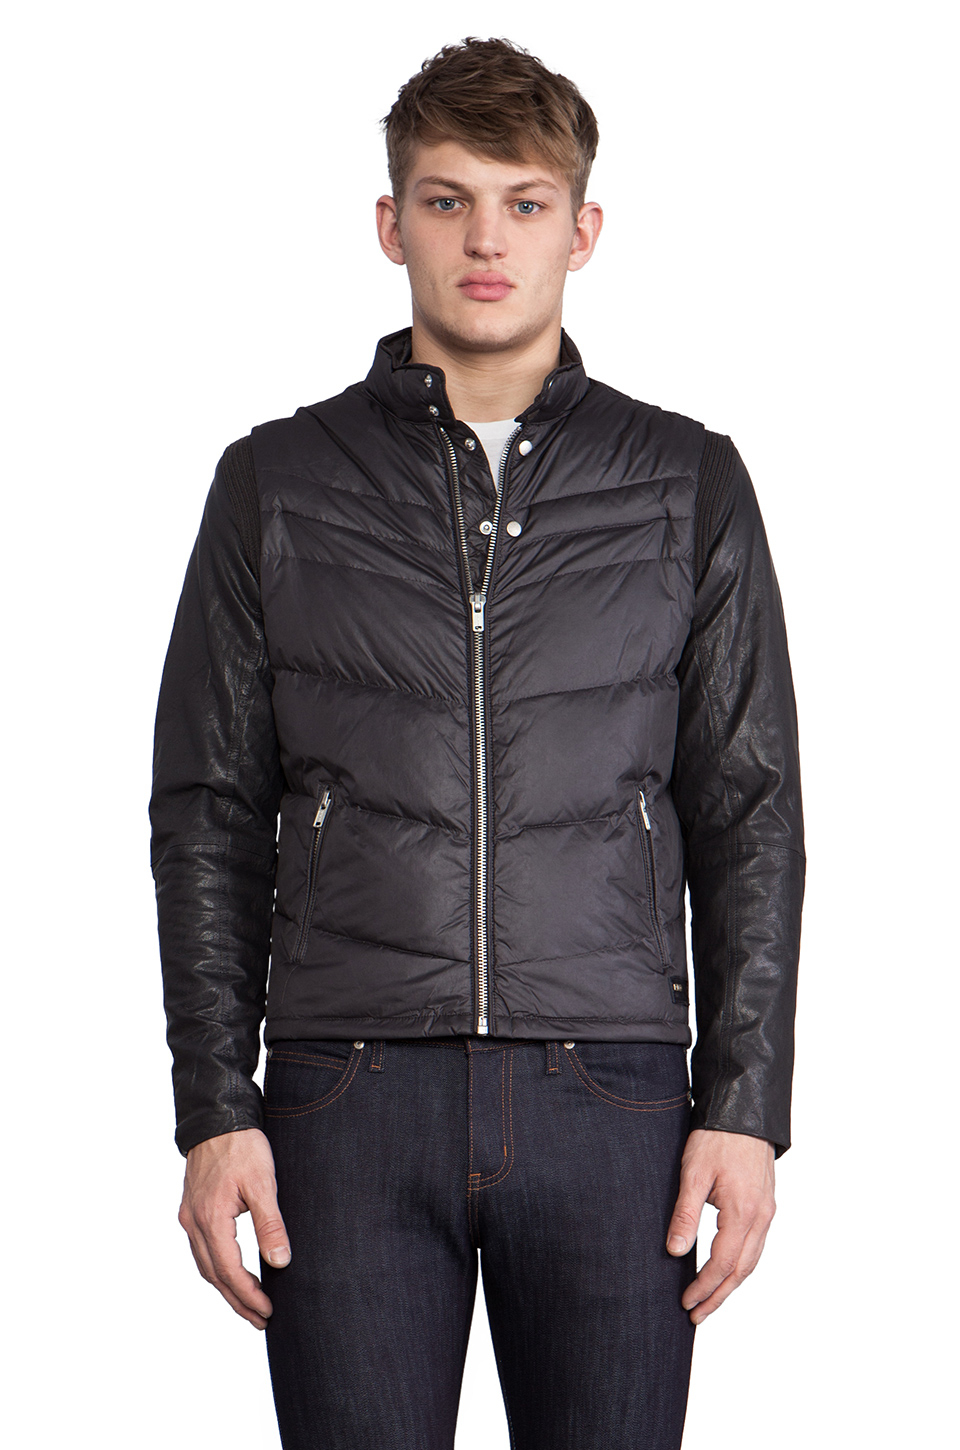 Lyst - Diesel Ken Leather Puffer Jacket in Charcoal in Gray for Men